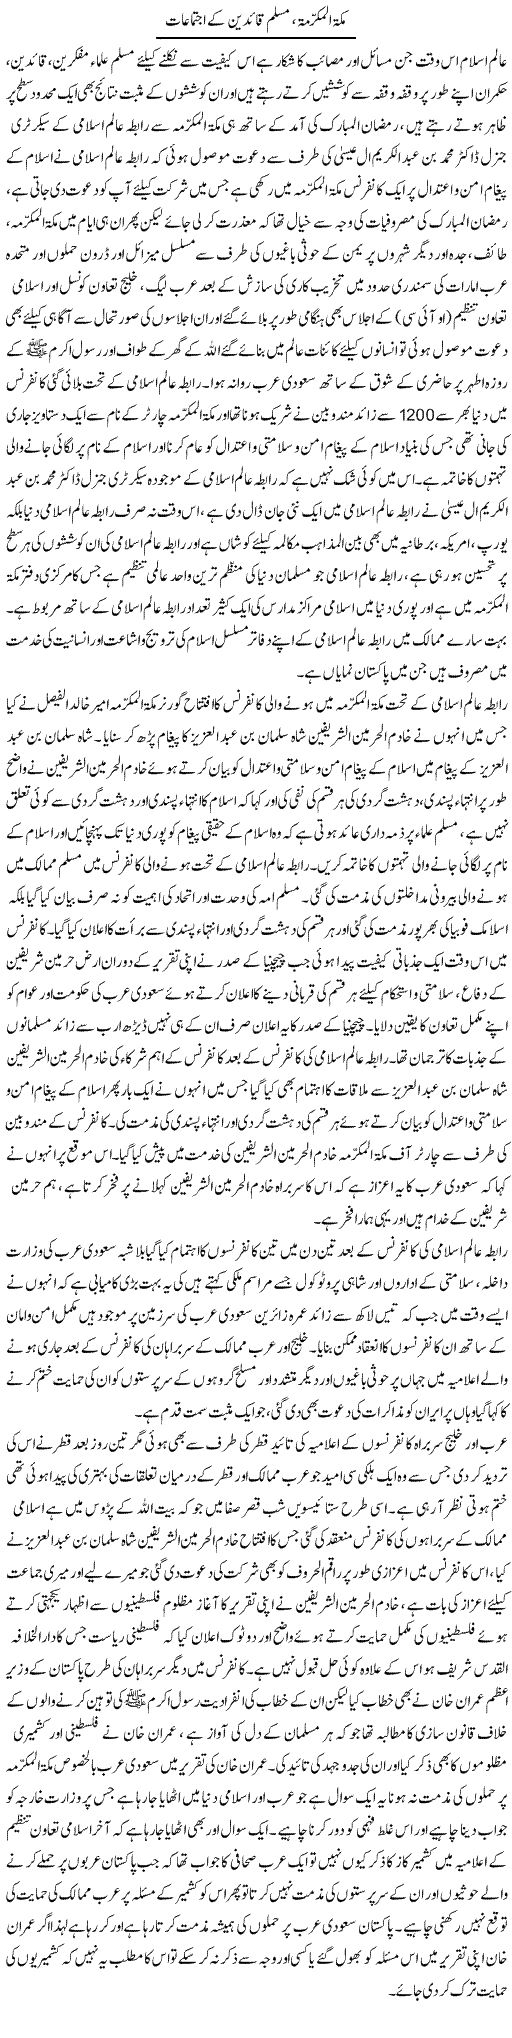 Makkah Mukarma, Muslim Quaideen Ke Ijtemaat | Tahir Mehmood Ashrafi | Daily Urdu Columns